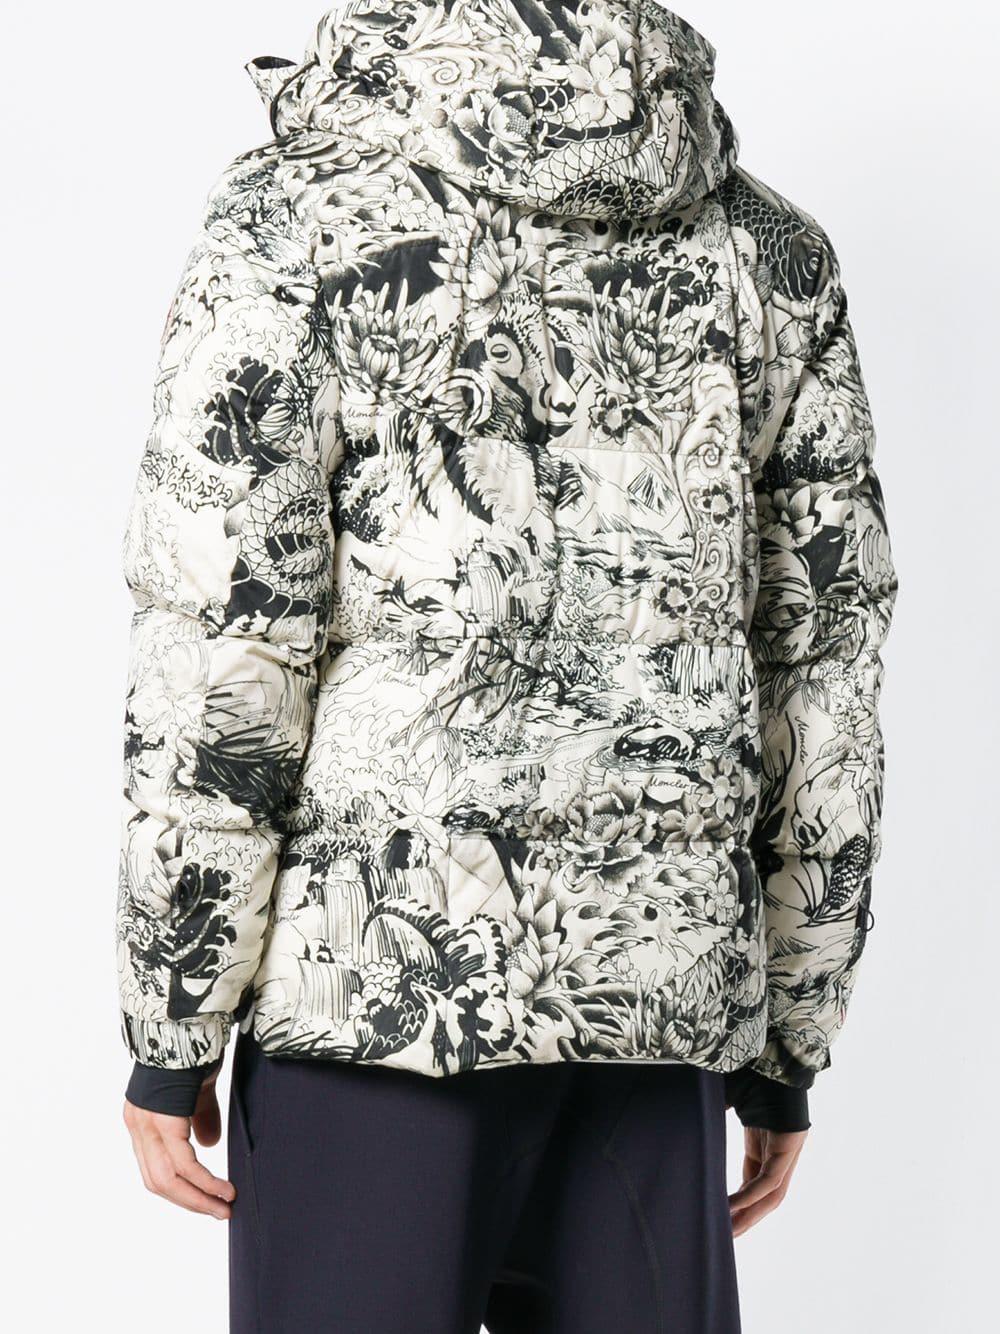 moncler printed jacket